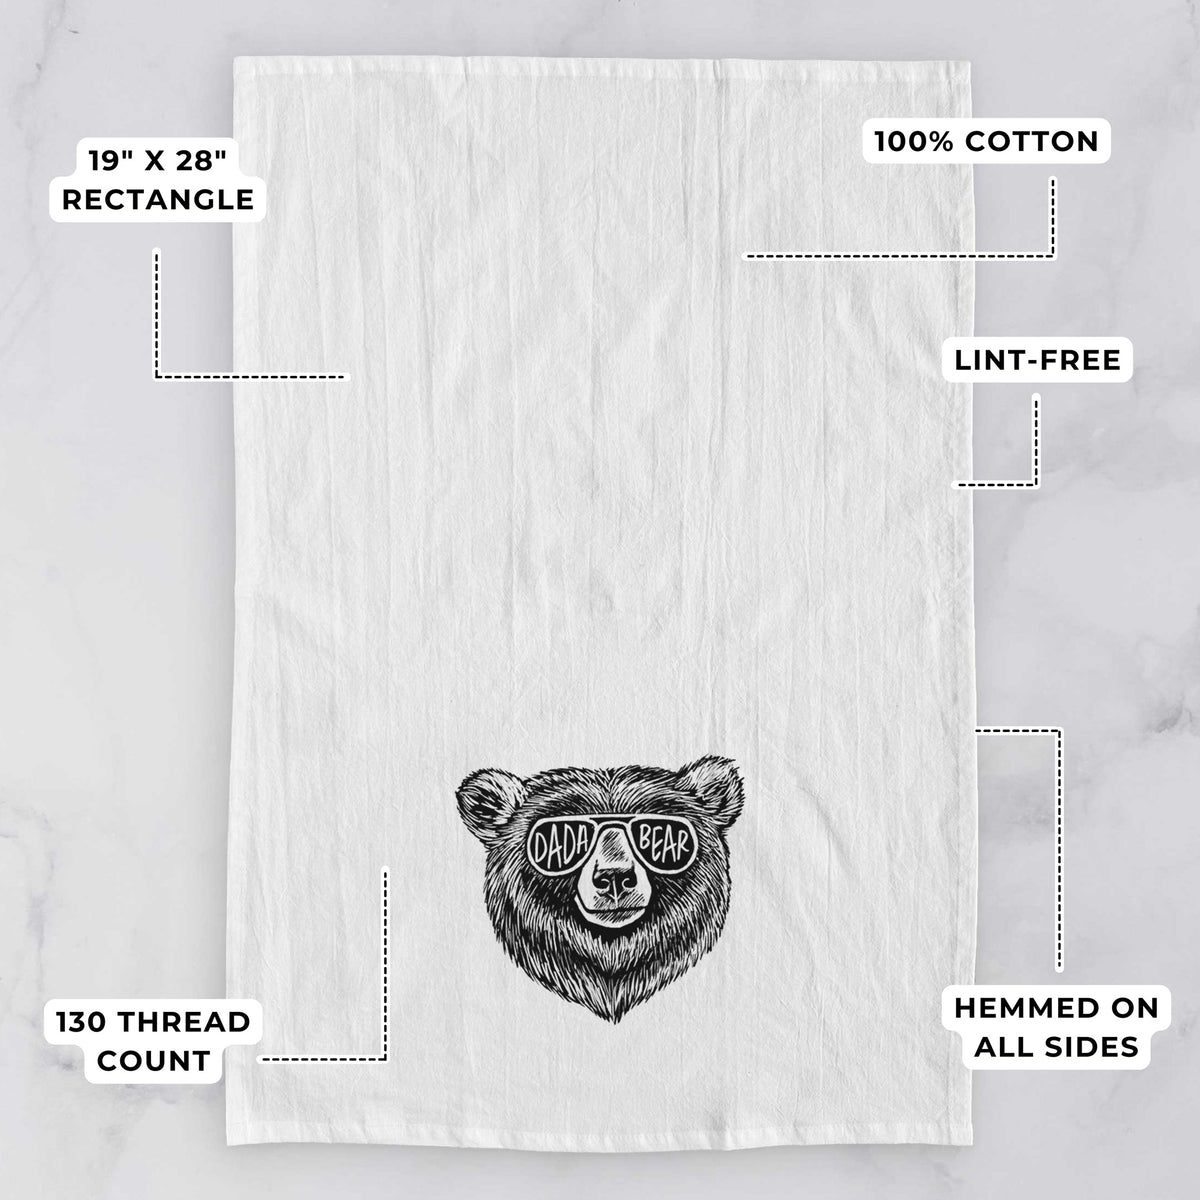 Dada Bear Tea Towel